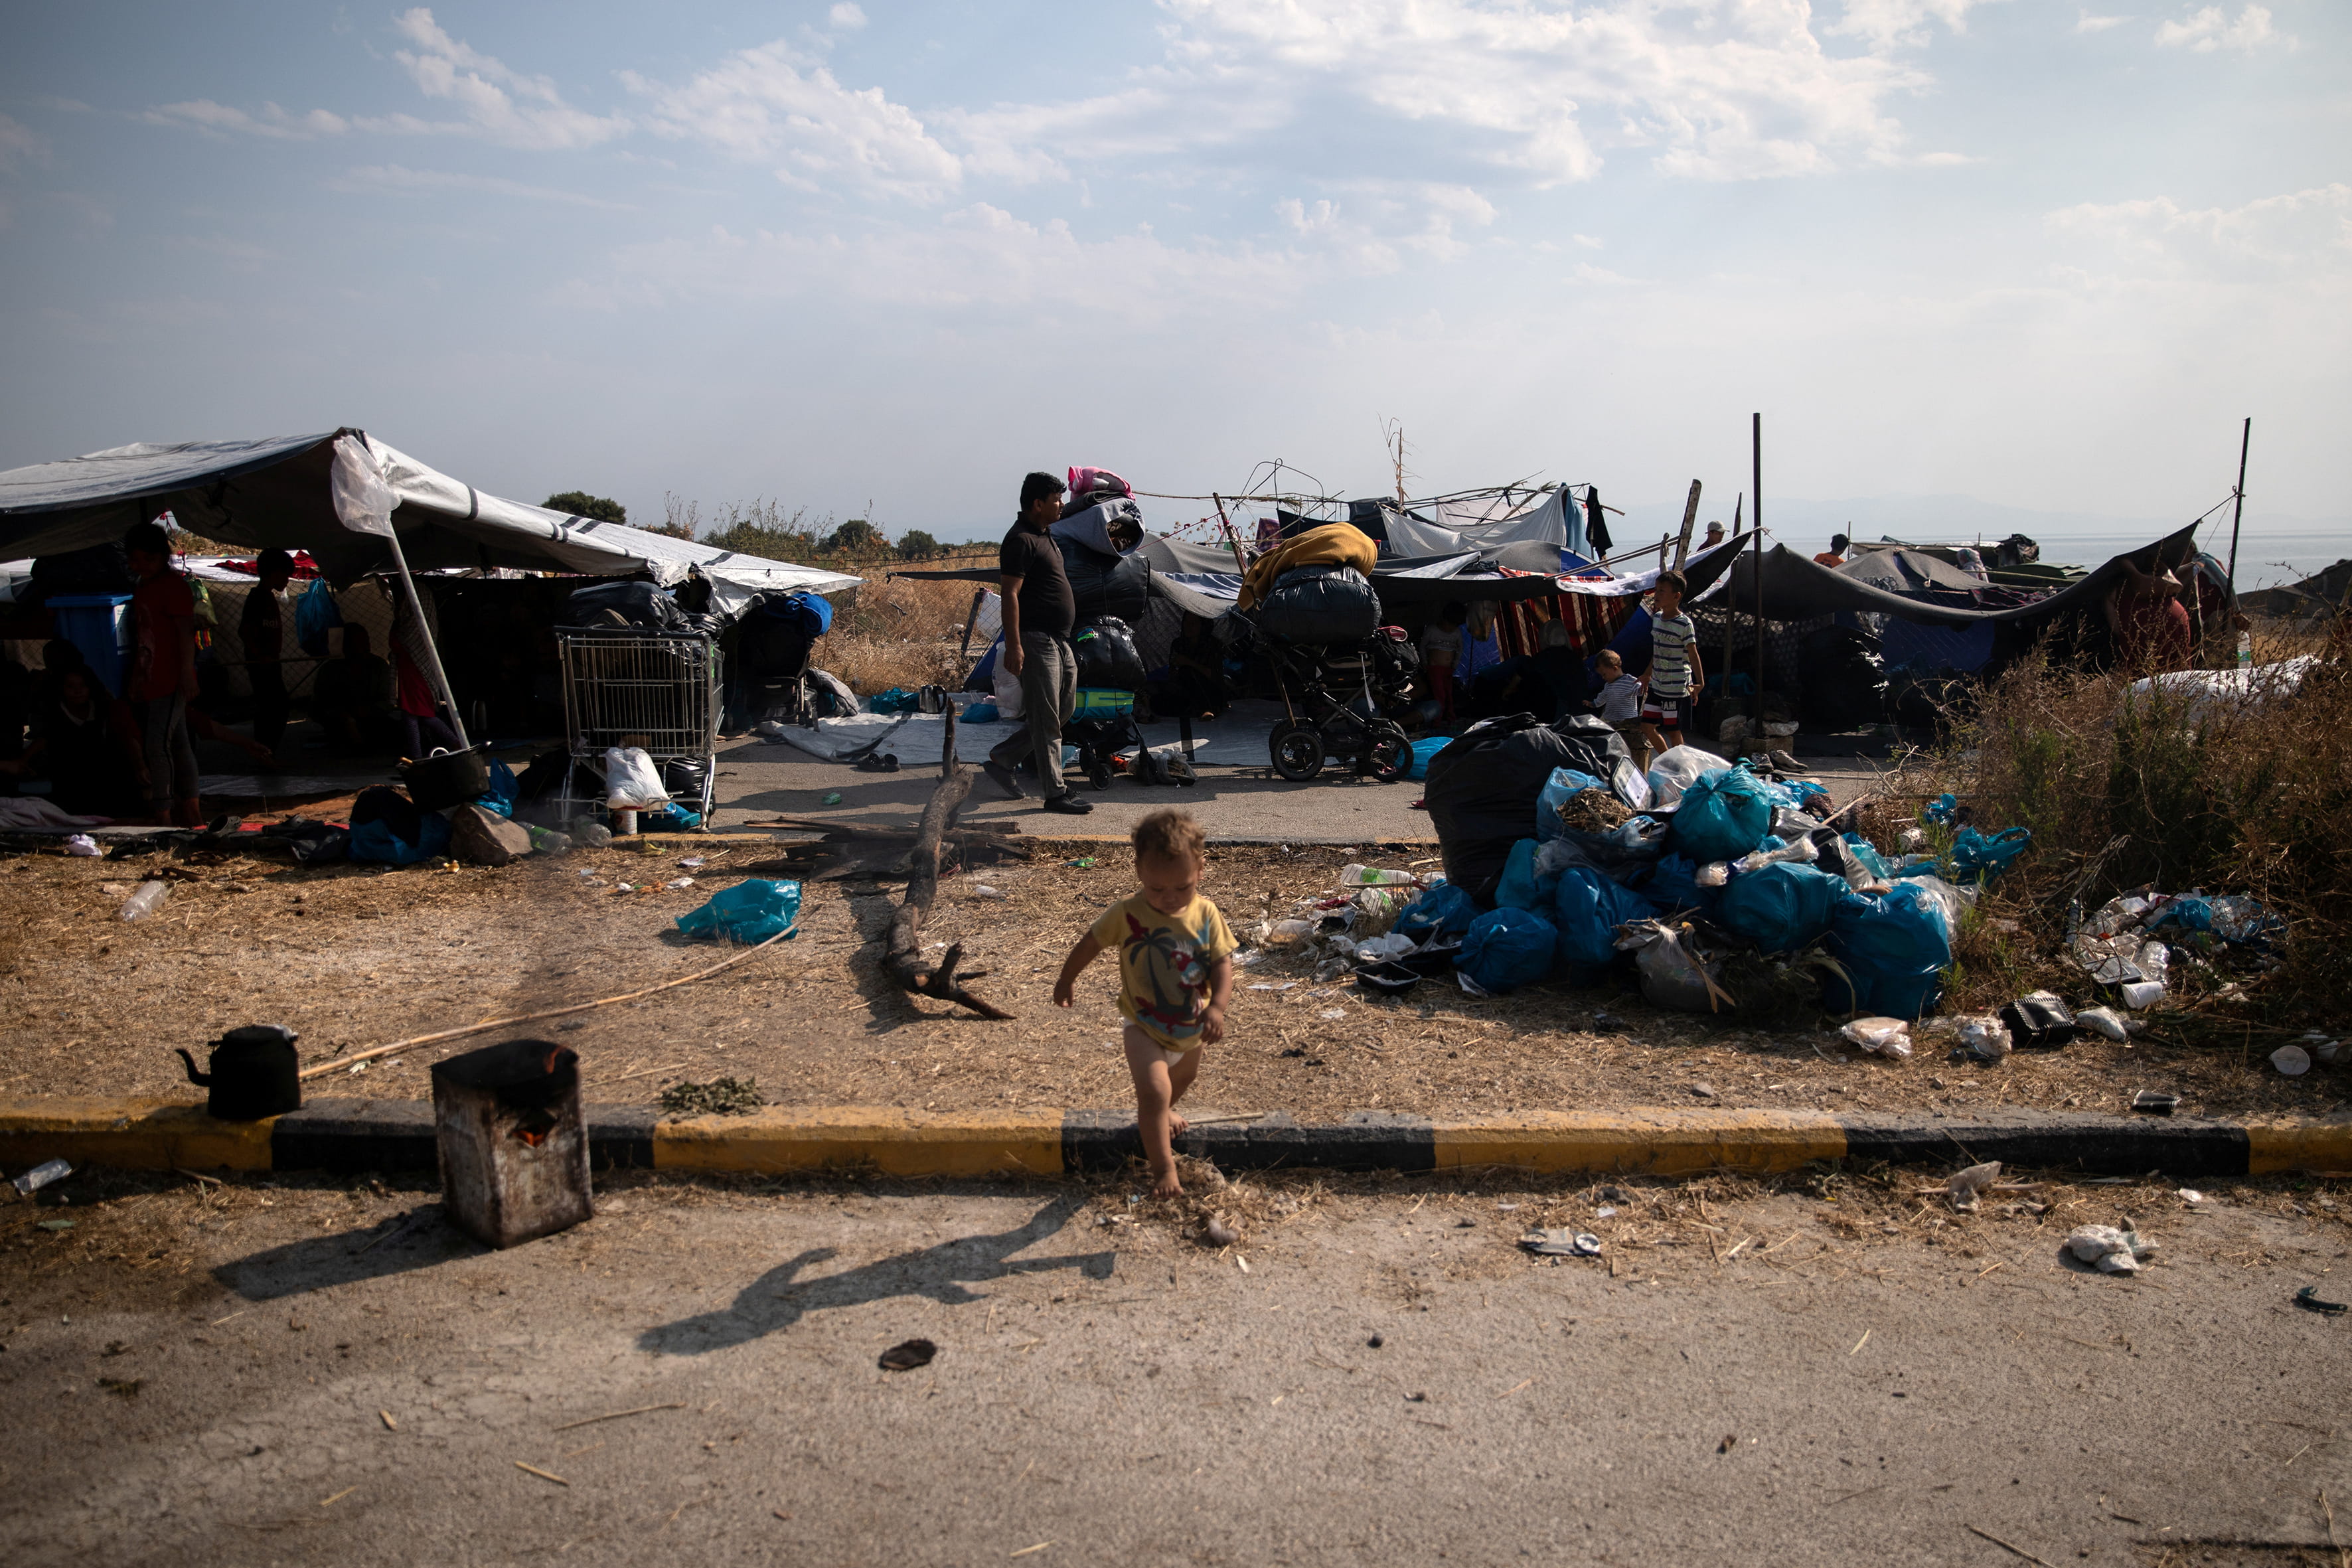 Ein Kleinkind auf Lesbos vor Zelten von Flüchtlingen, die behelfsmäßig am Straßenrand aufgestellt wurden. Daneben Müllberge. (Quelle: Alkis Konstantinidis)